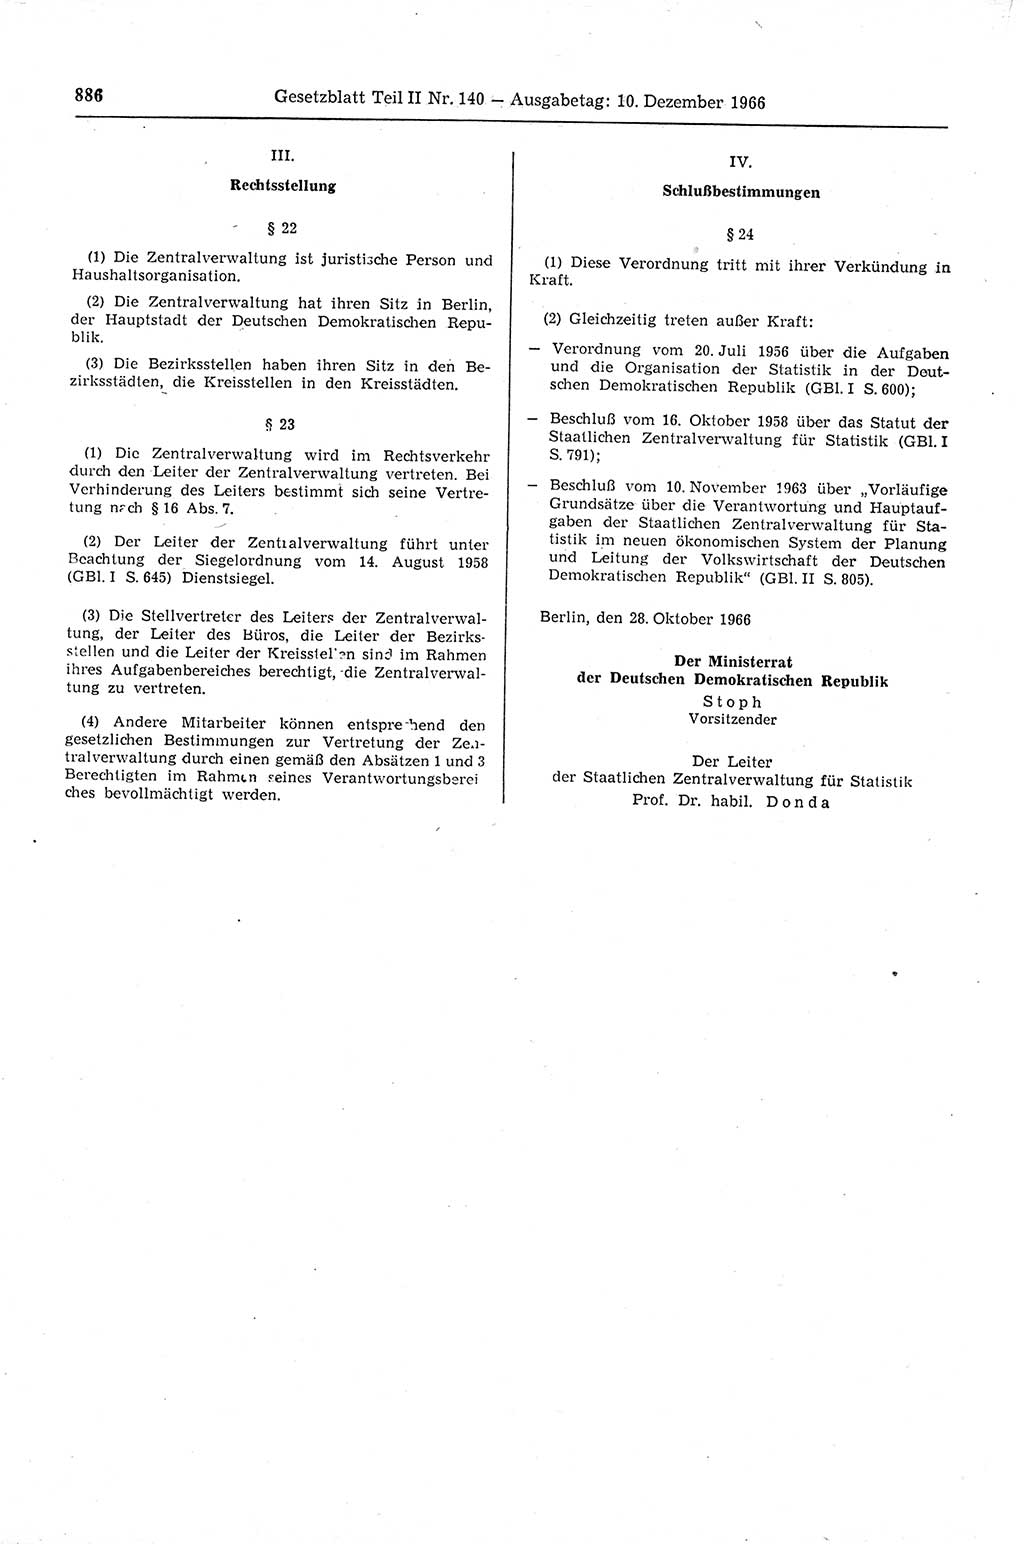 Gesetzblatt (GBl.) der Deutschen Demokratischen Republik (DDR) Teil ⅠⅠ 1966, Seite 886 (GBl. DDR ⅠⅠ 1966, S. 886)